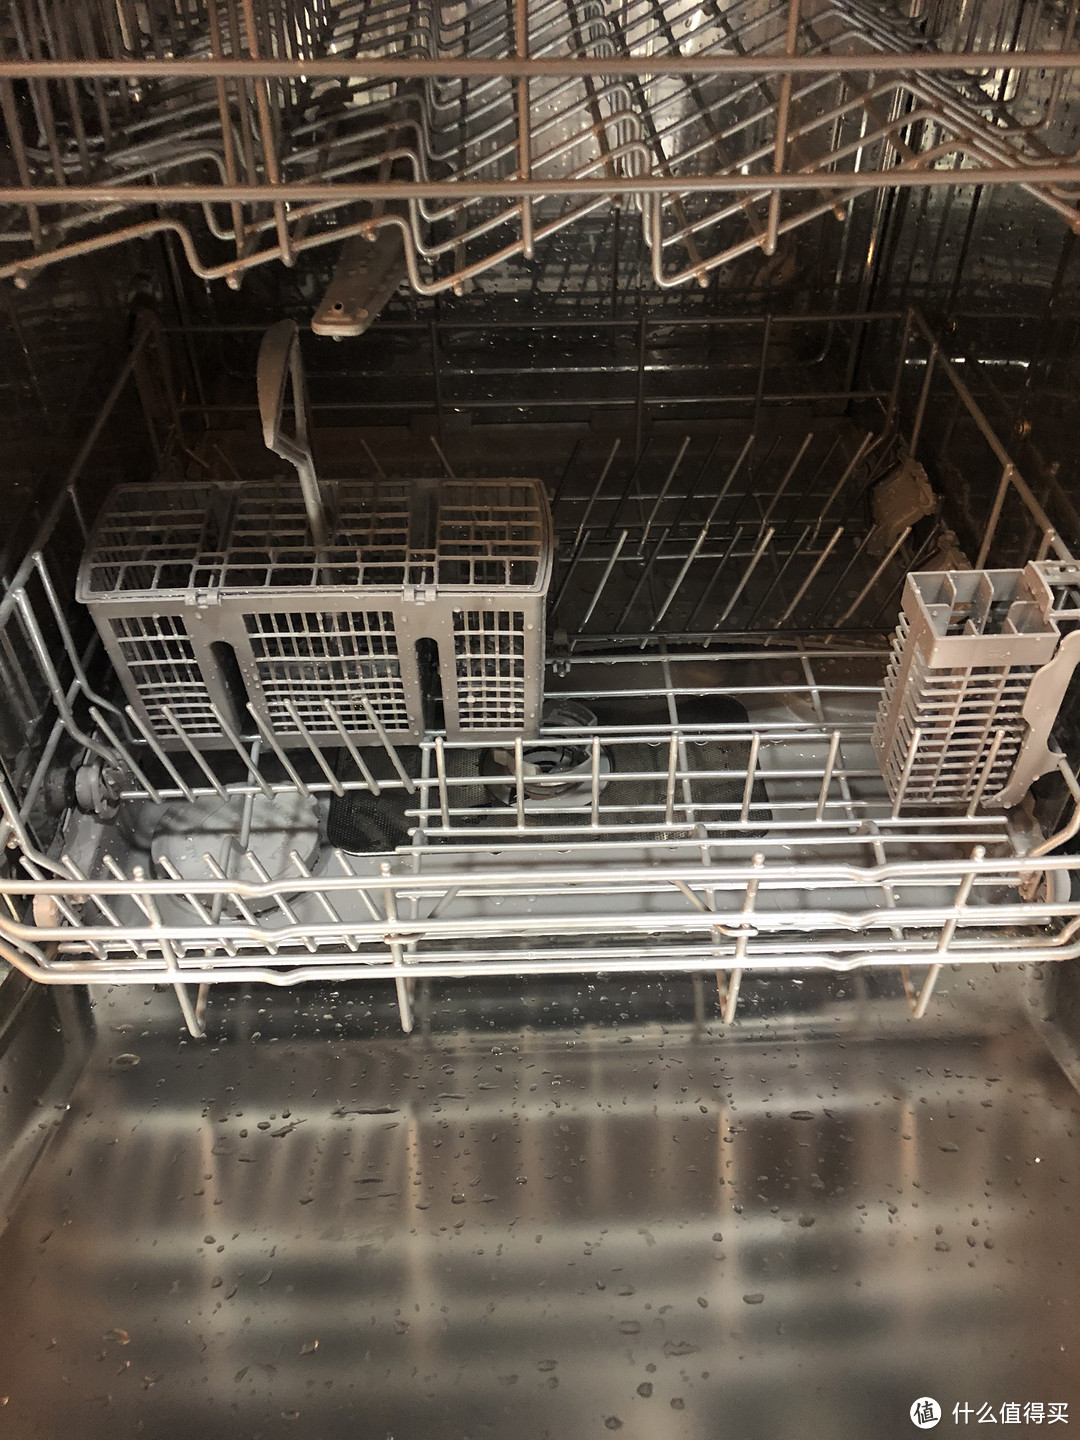 上下两层洗碗机